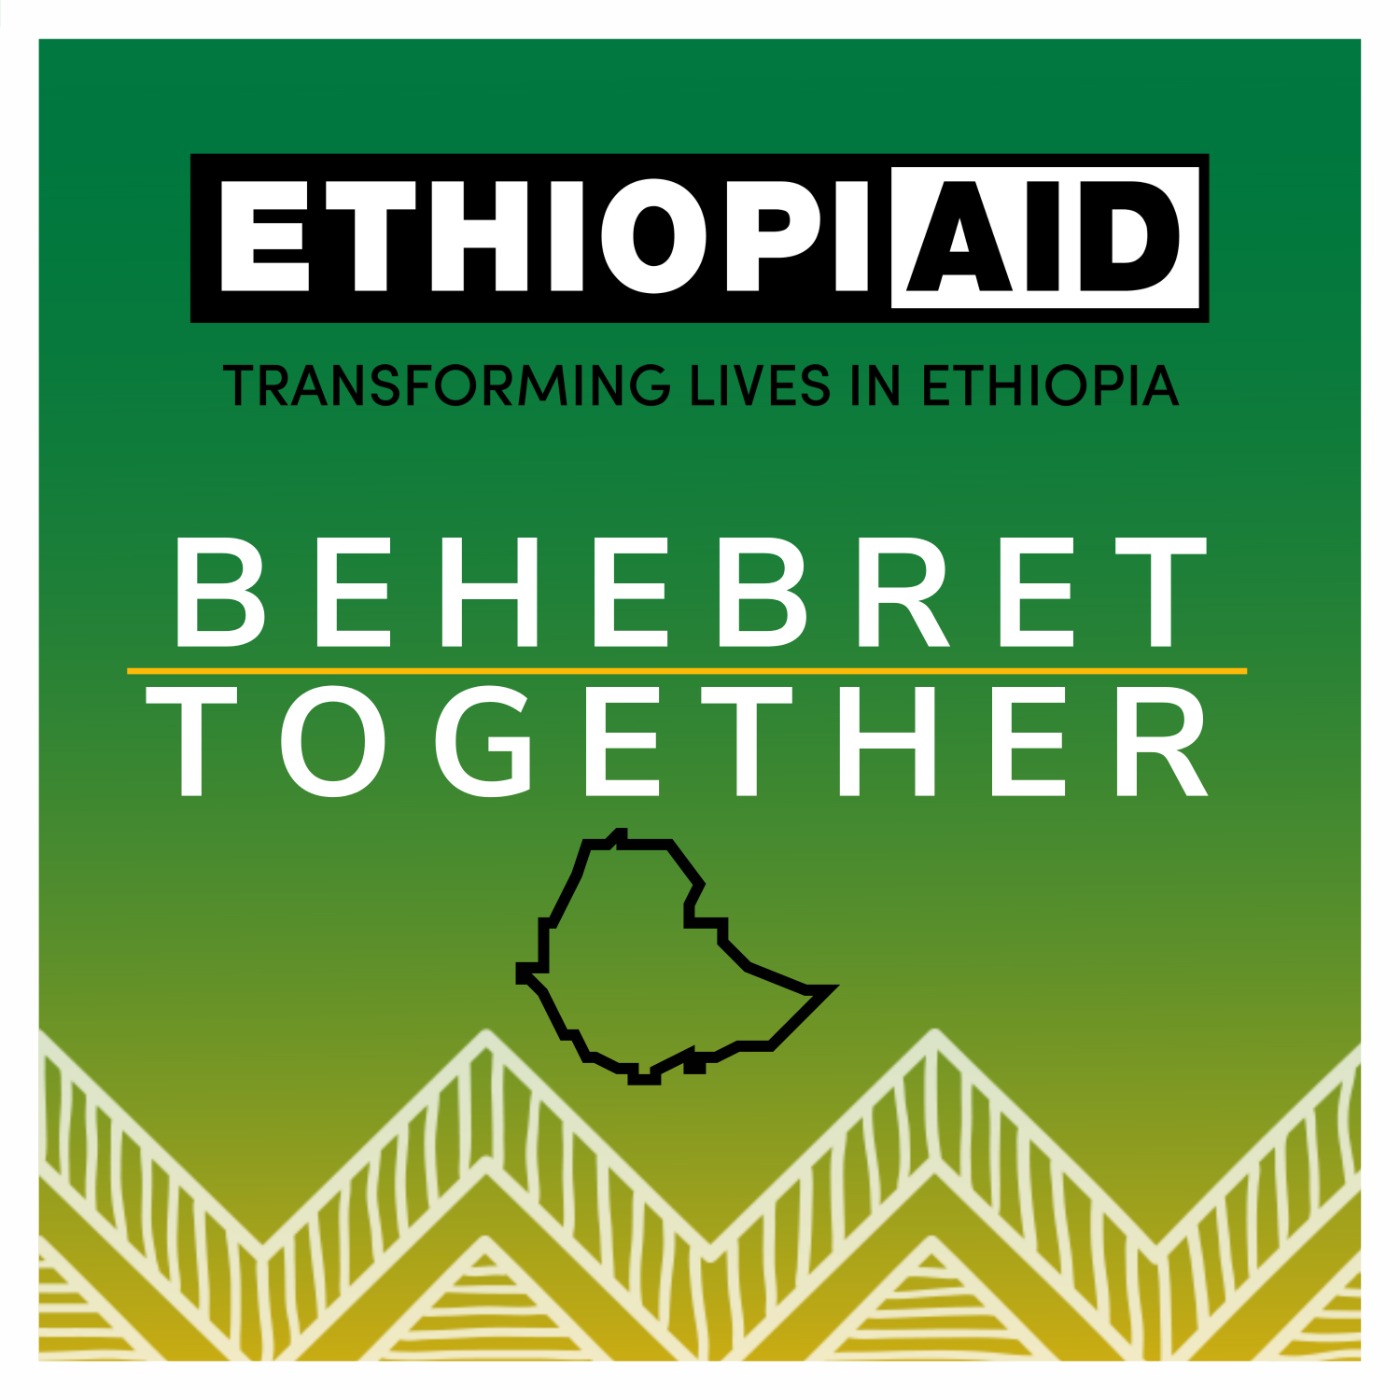 Ethiopiaid Behebret (Together)